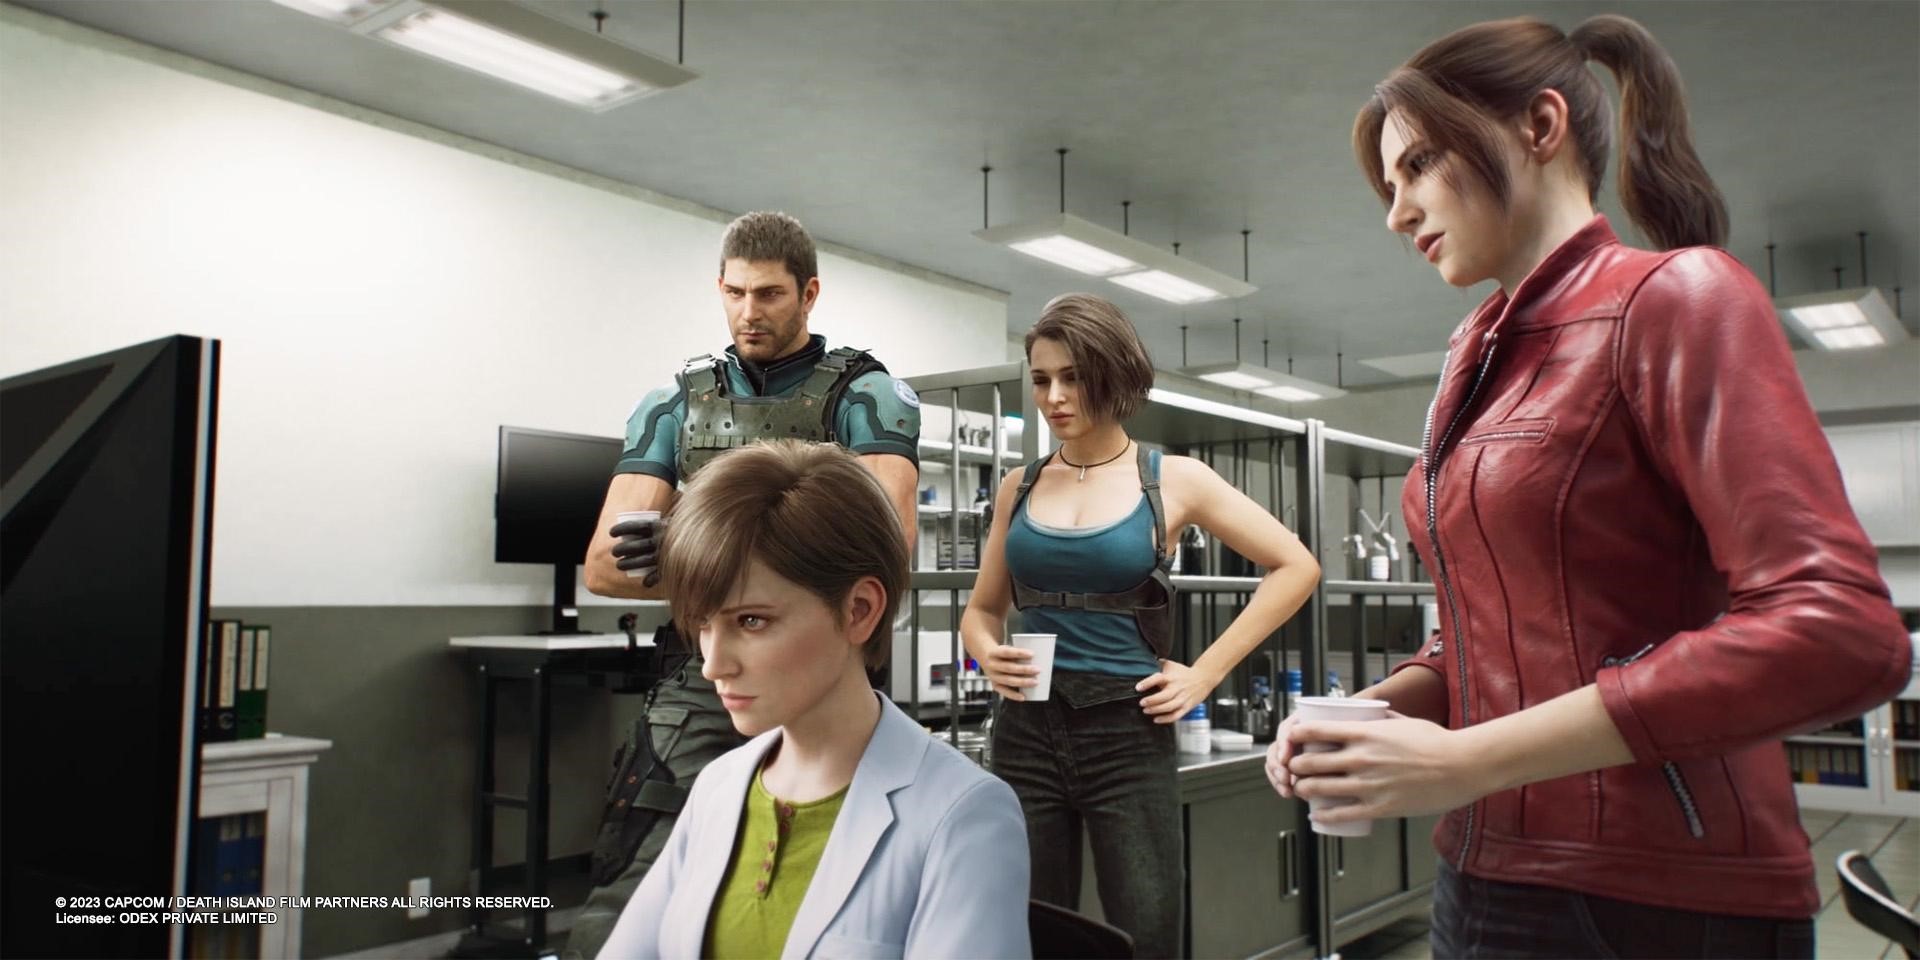 Nhìn chung, với những phần phim CG như “Resident Evil”, cốt truyện hầu như không phải là một thế mạnh.